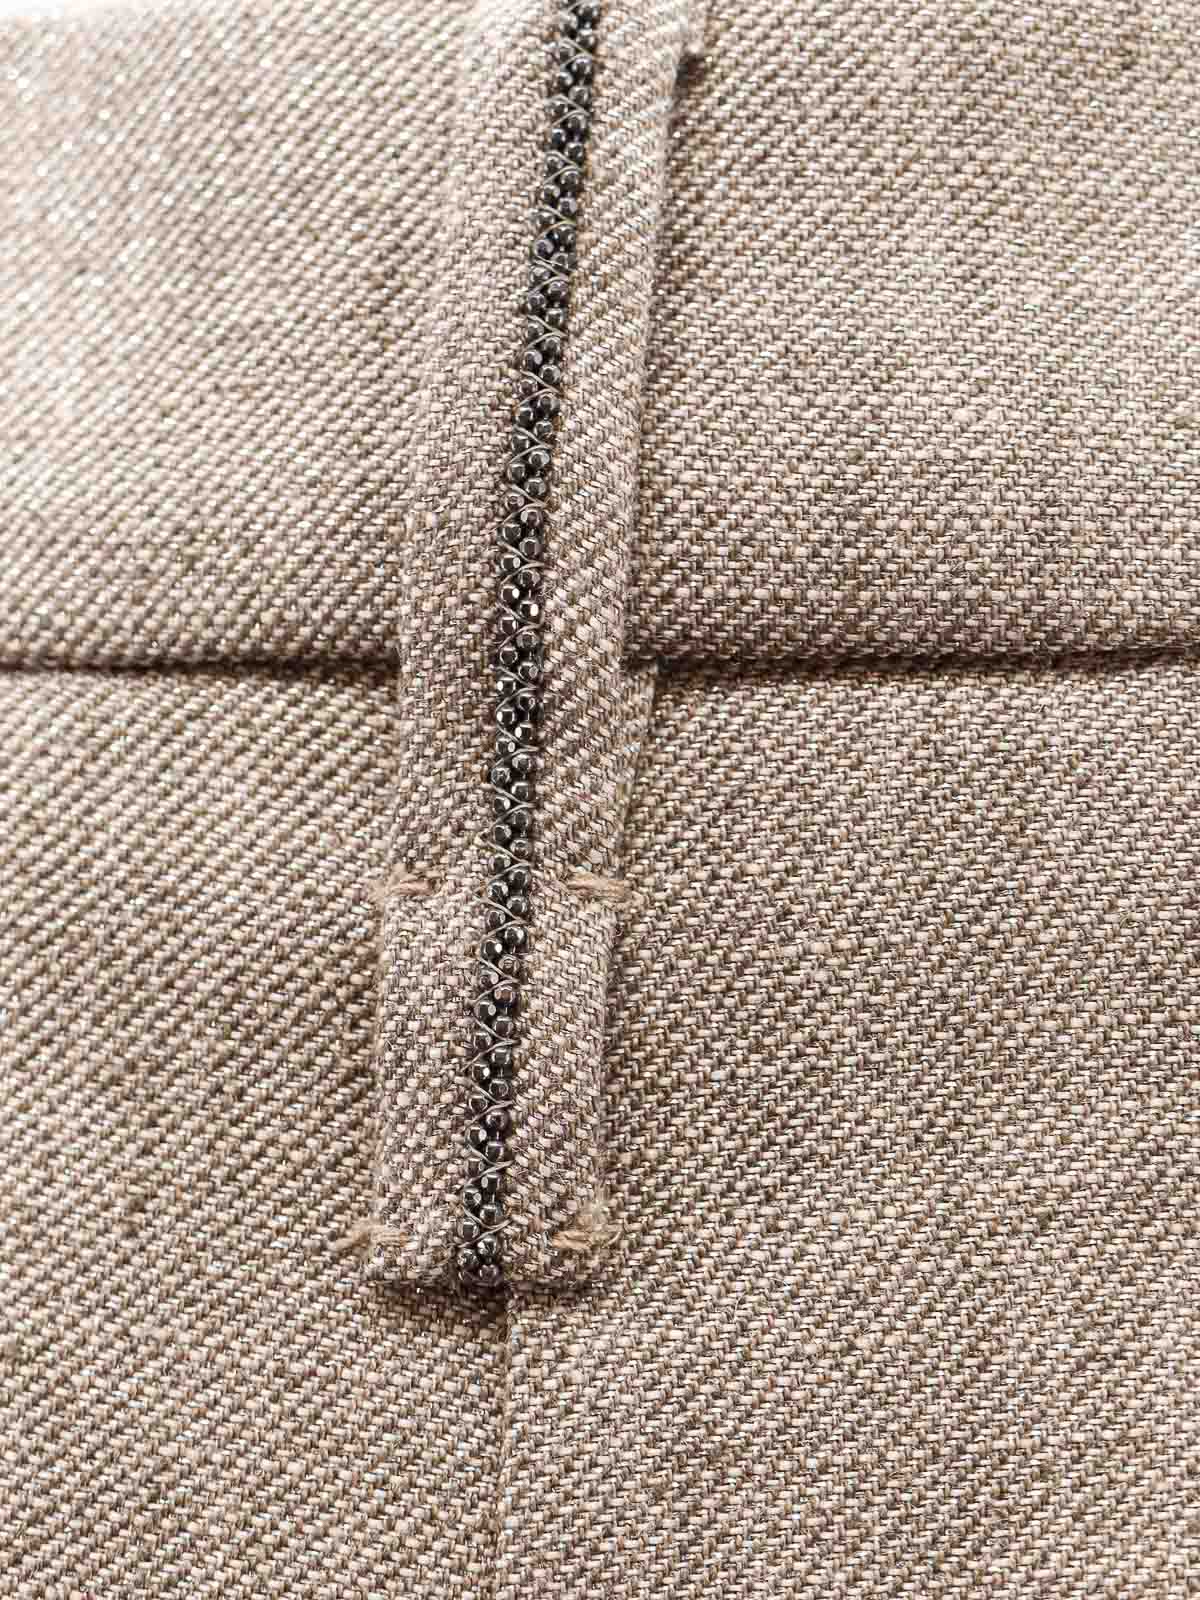 Shop Brunello Cucinelli Linen Trouser With Lurex Effect In Beige